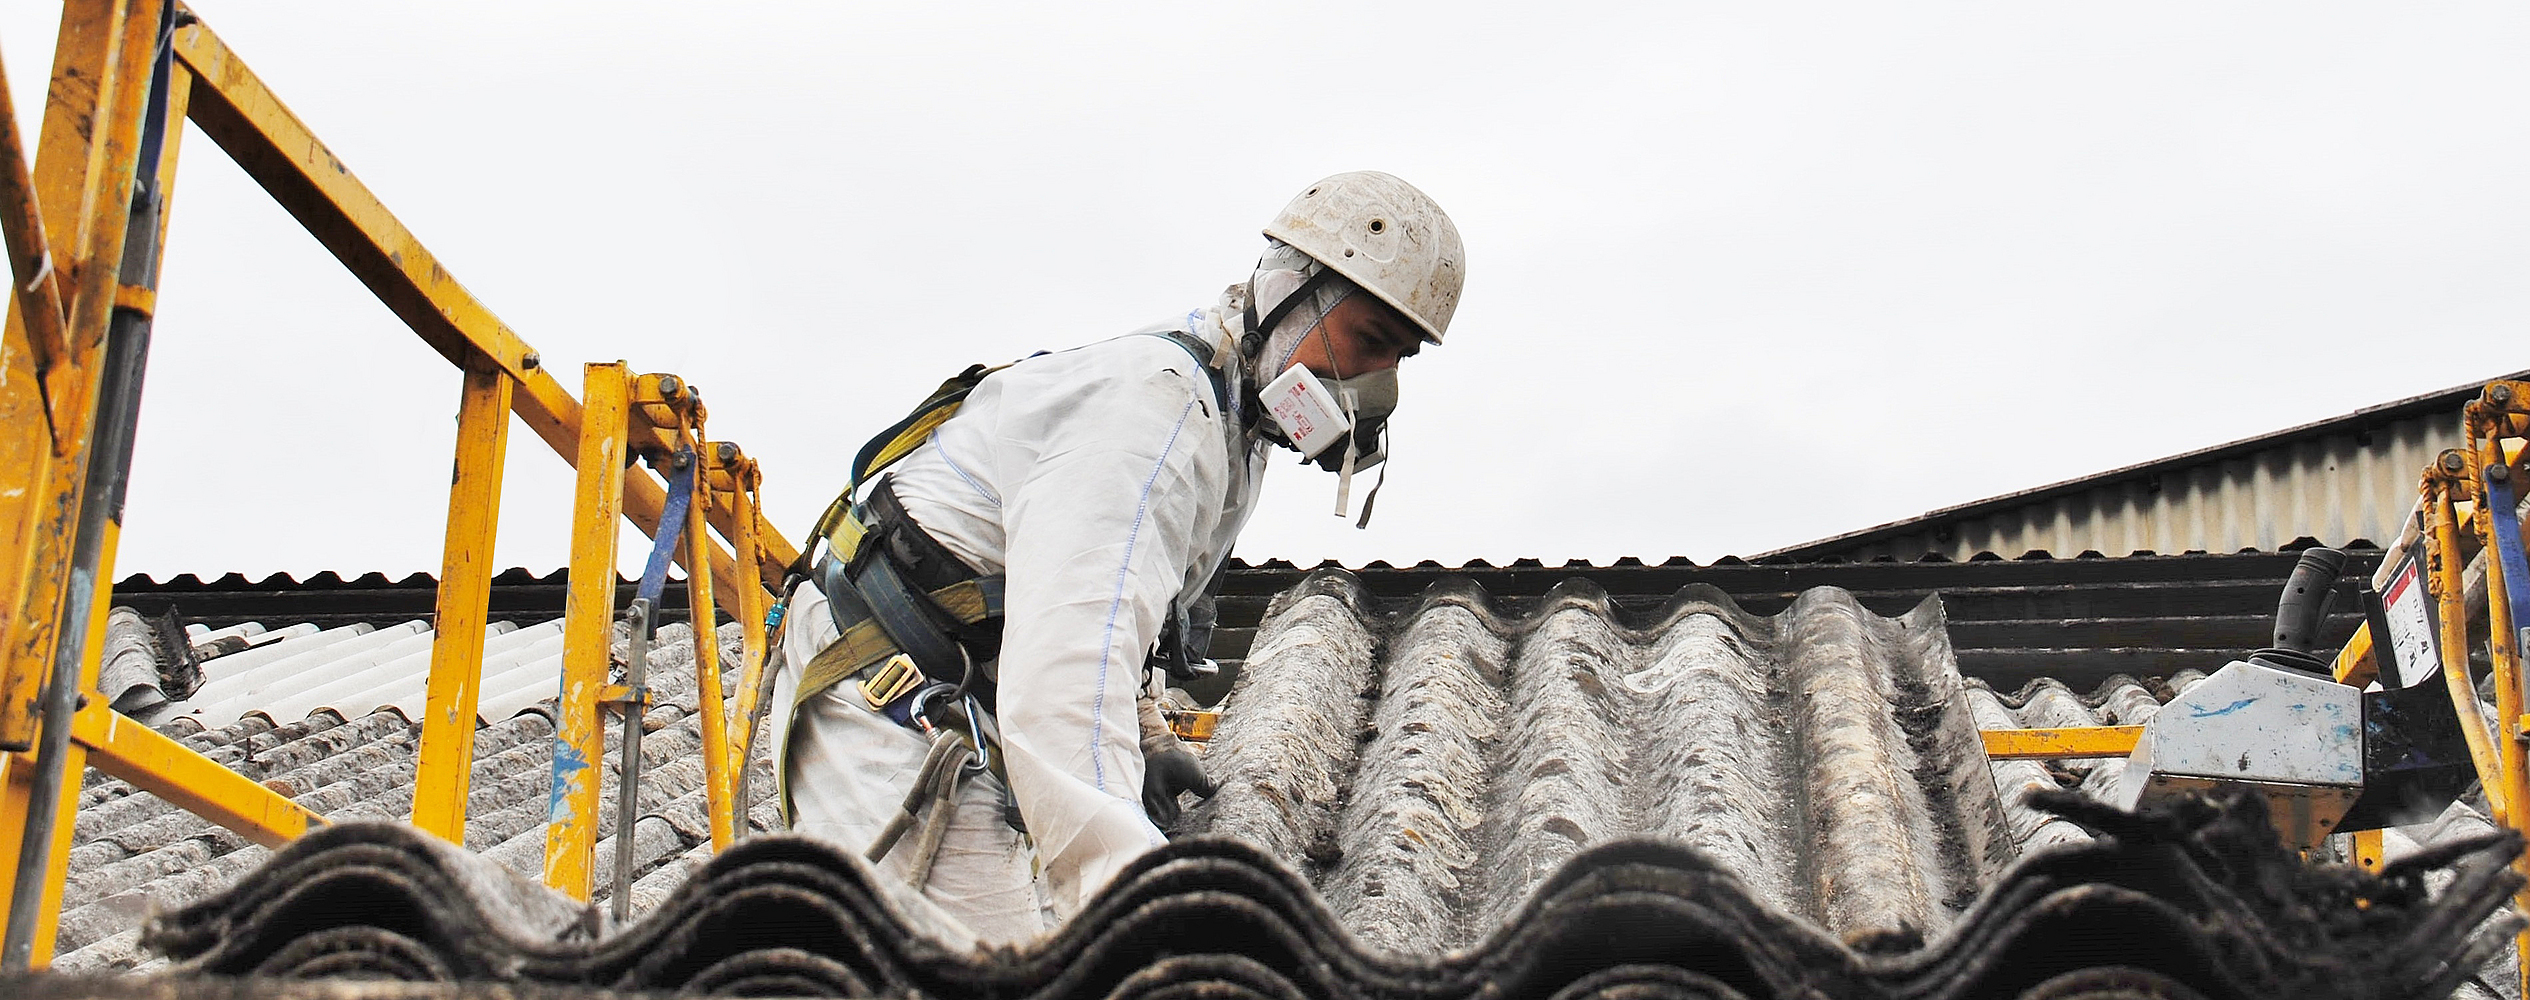 Mann in Schutzanzug mit Atemschutz und Schutzhelm arbeitet auf einem gewellten Dach.